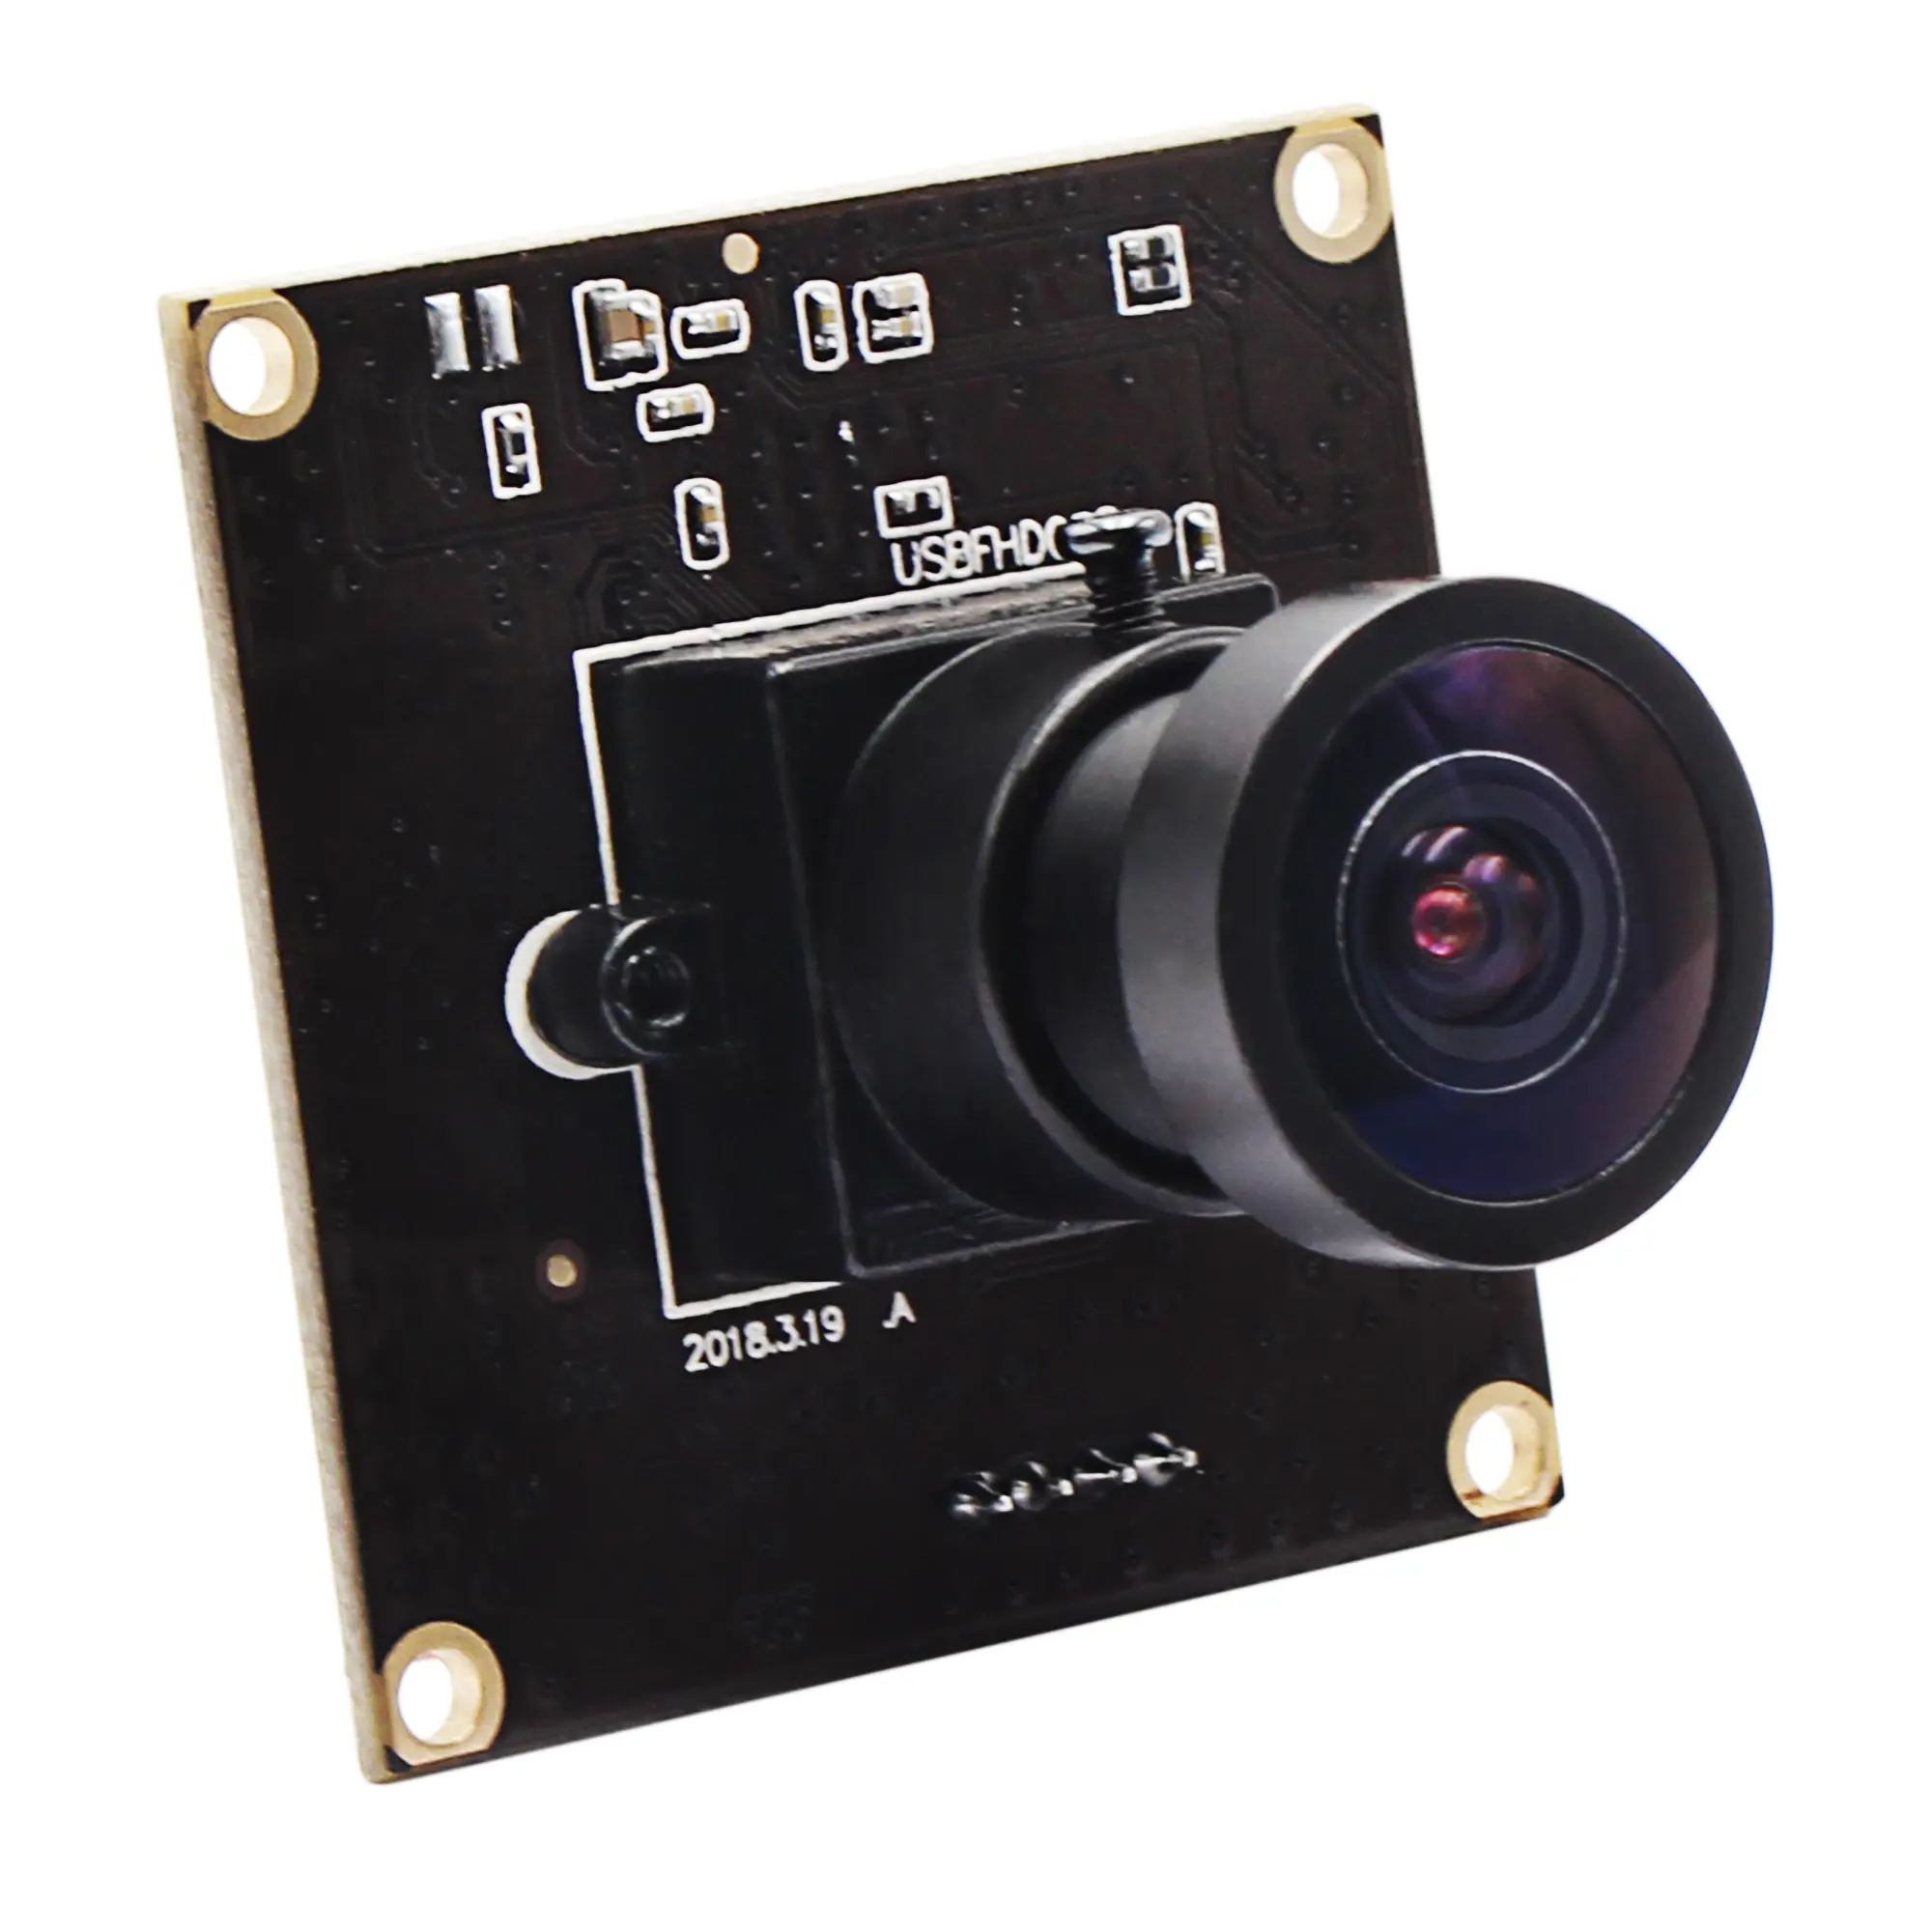 ELP 광각 260fps USB 웹캠 2MP 풀 HD CMOS OV4689 센서 미니 1080P 60fps 카메라 모듈 2.9mm 렌즈